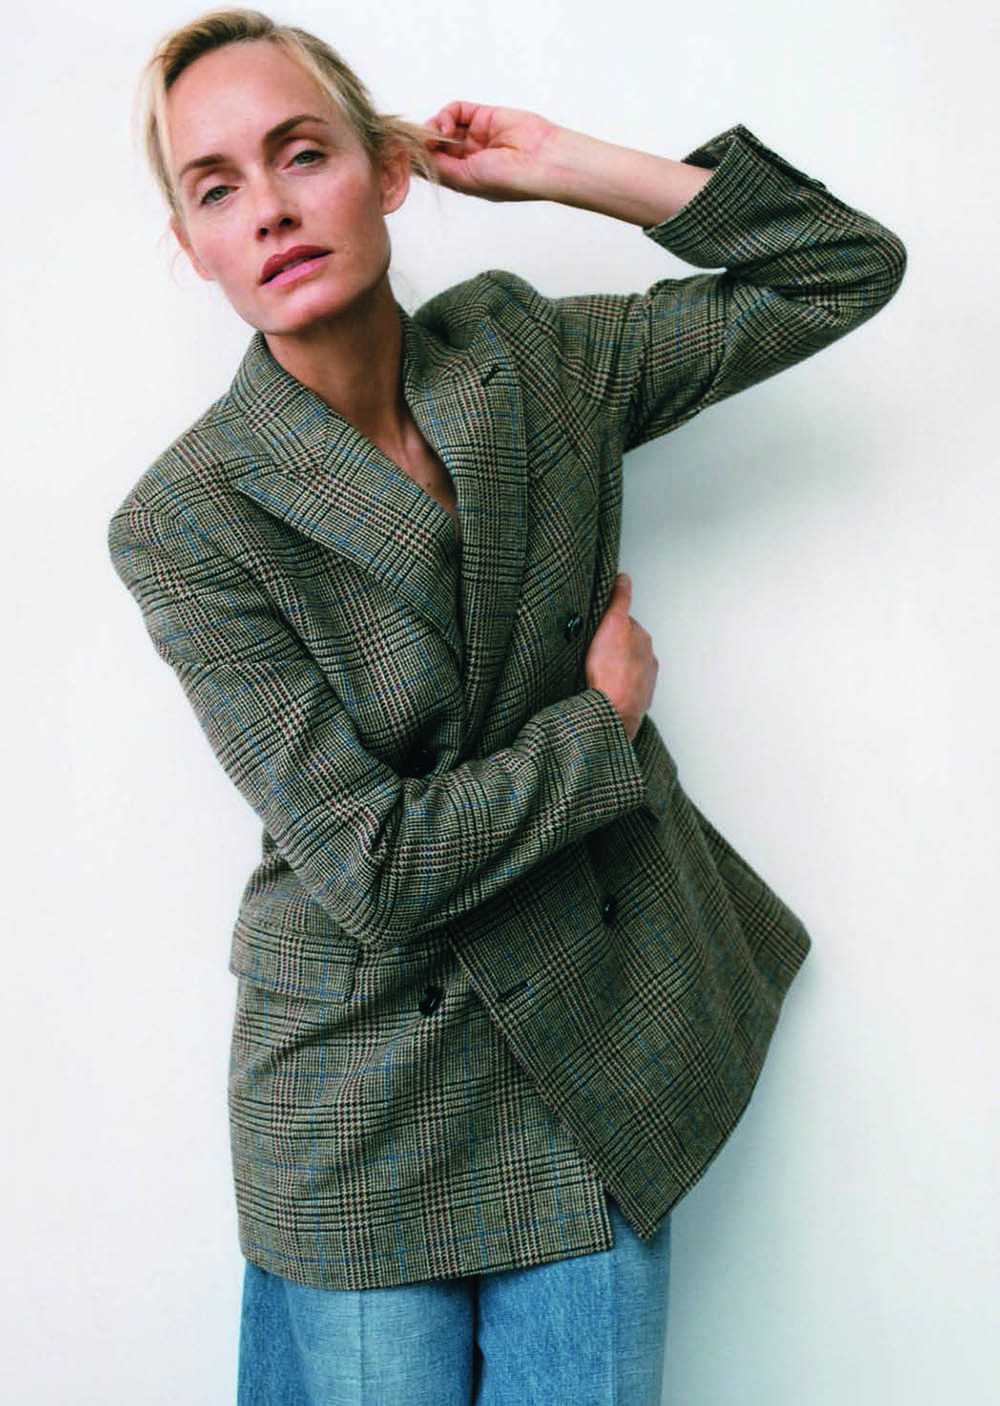 Amber Valletta by Zoë Ghertner for Vogue Poland November 2019